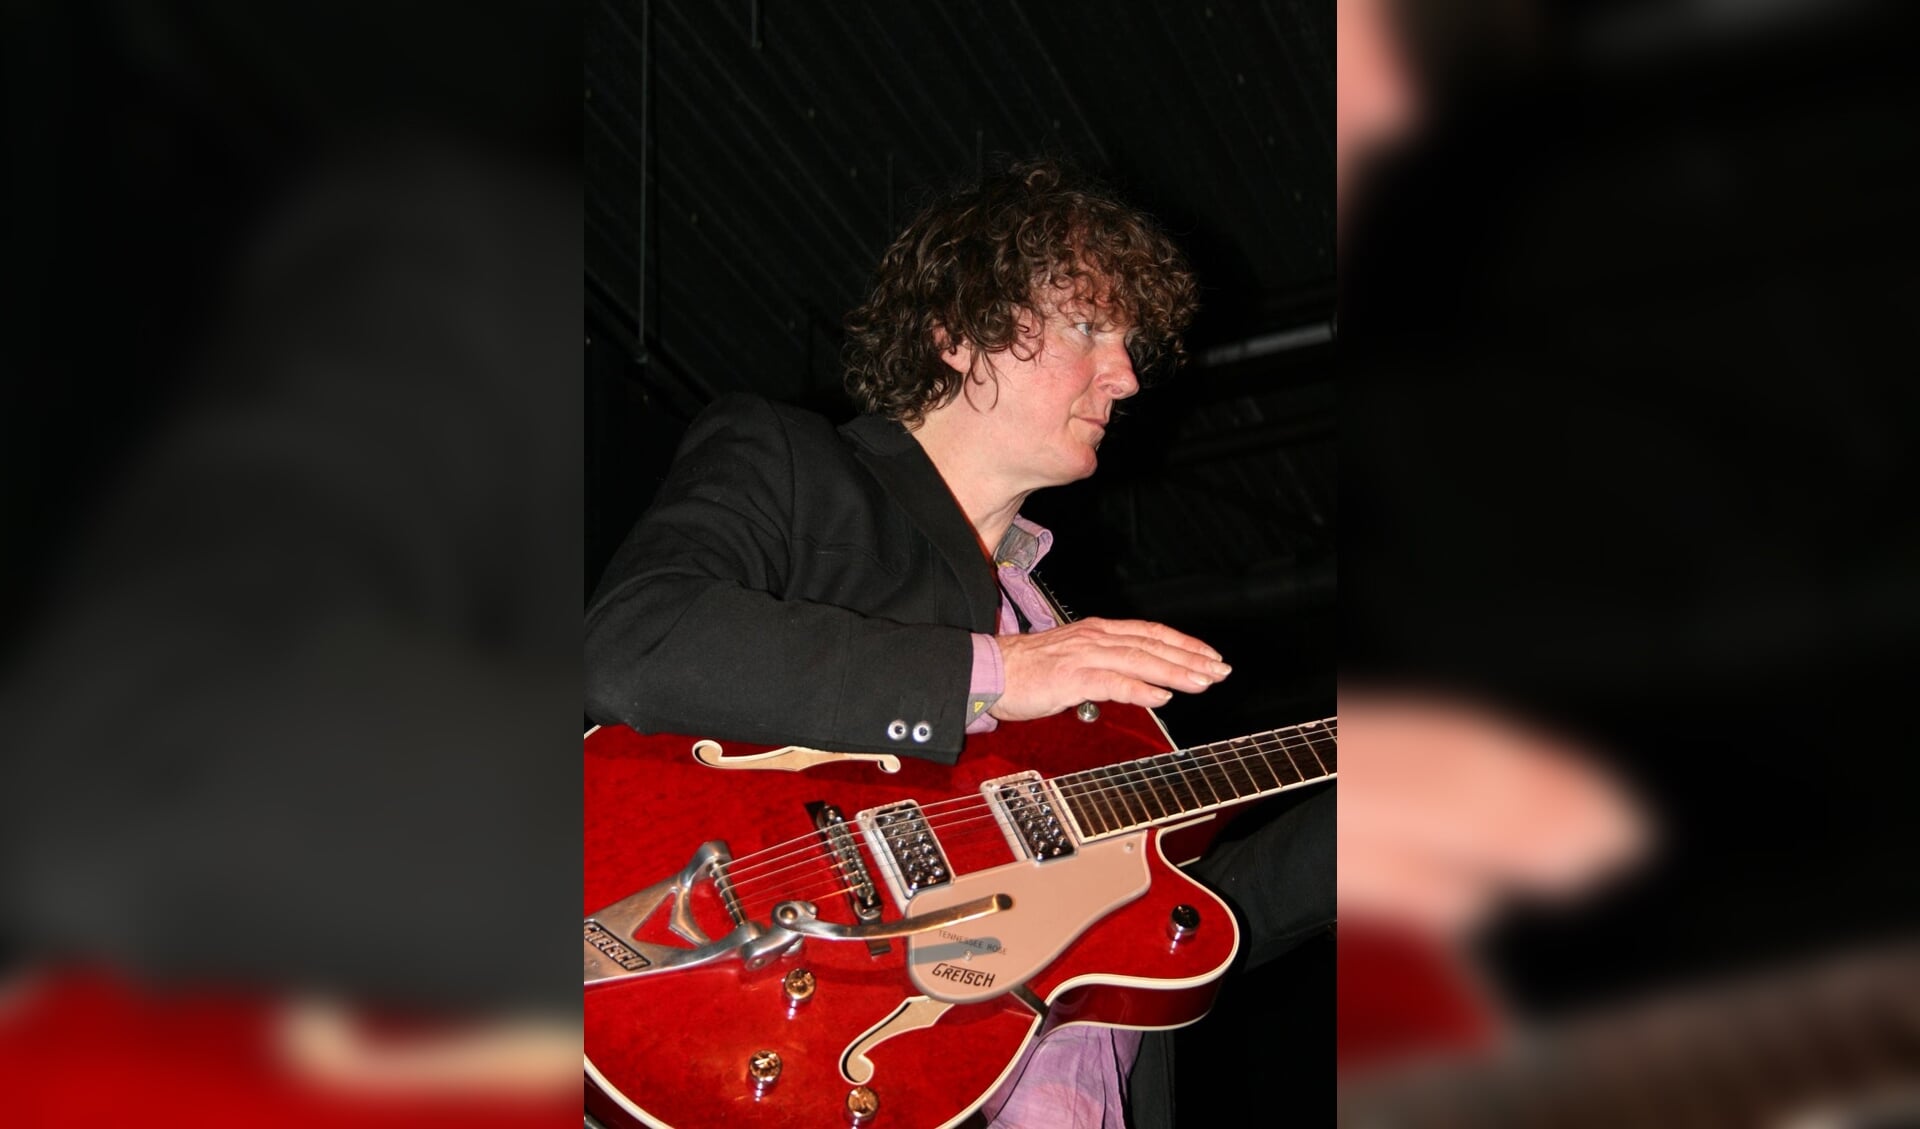 Ton Mulders, ooit winnaar van de Nederlandse Popprijs, is klassiek opgeleid gitarist en is een bekende muzikant in onze regio. 